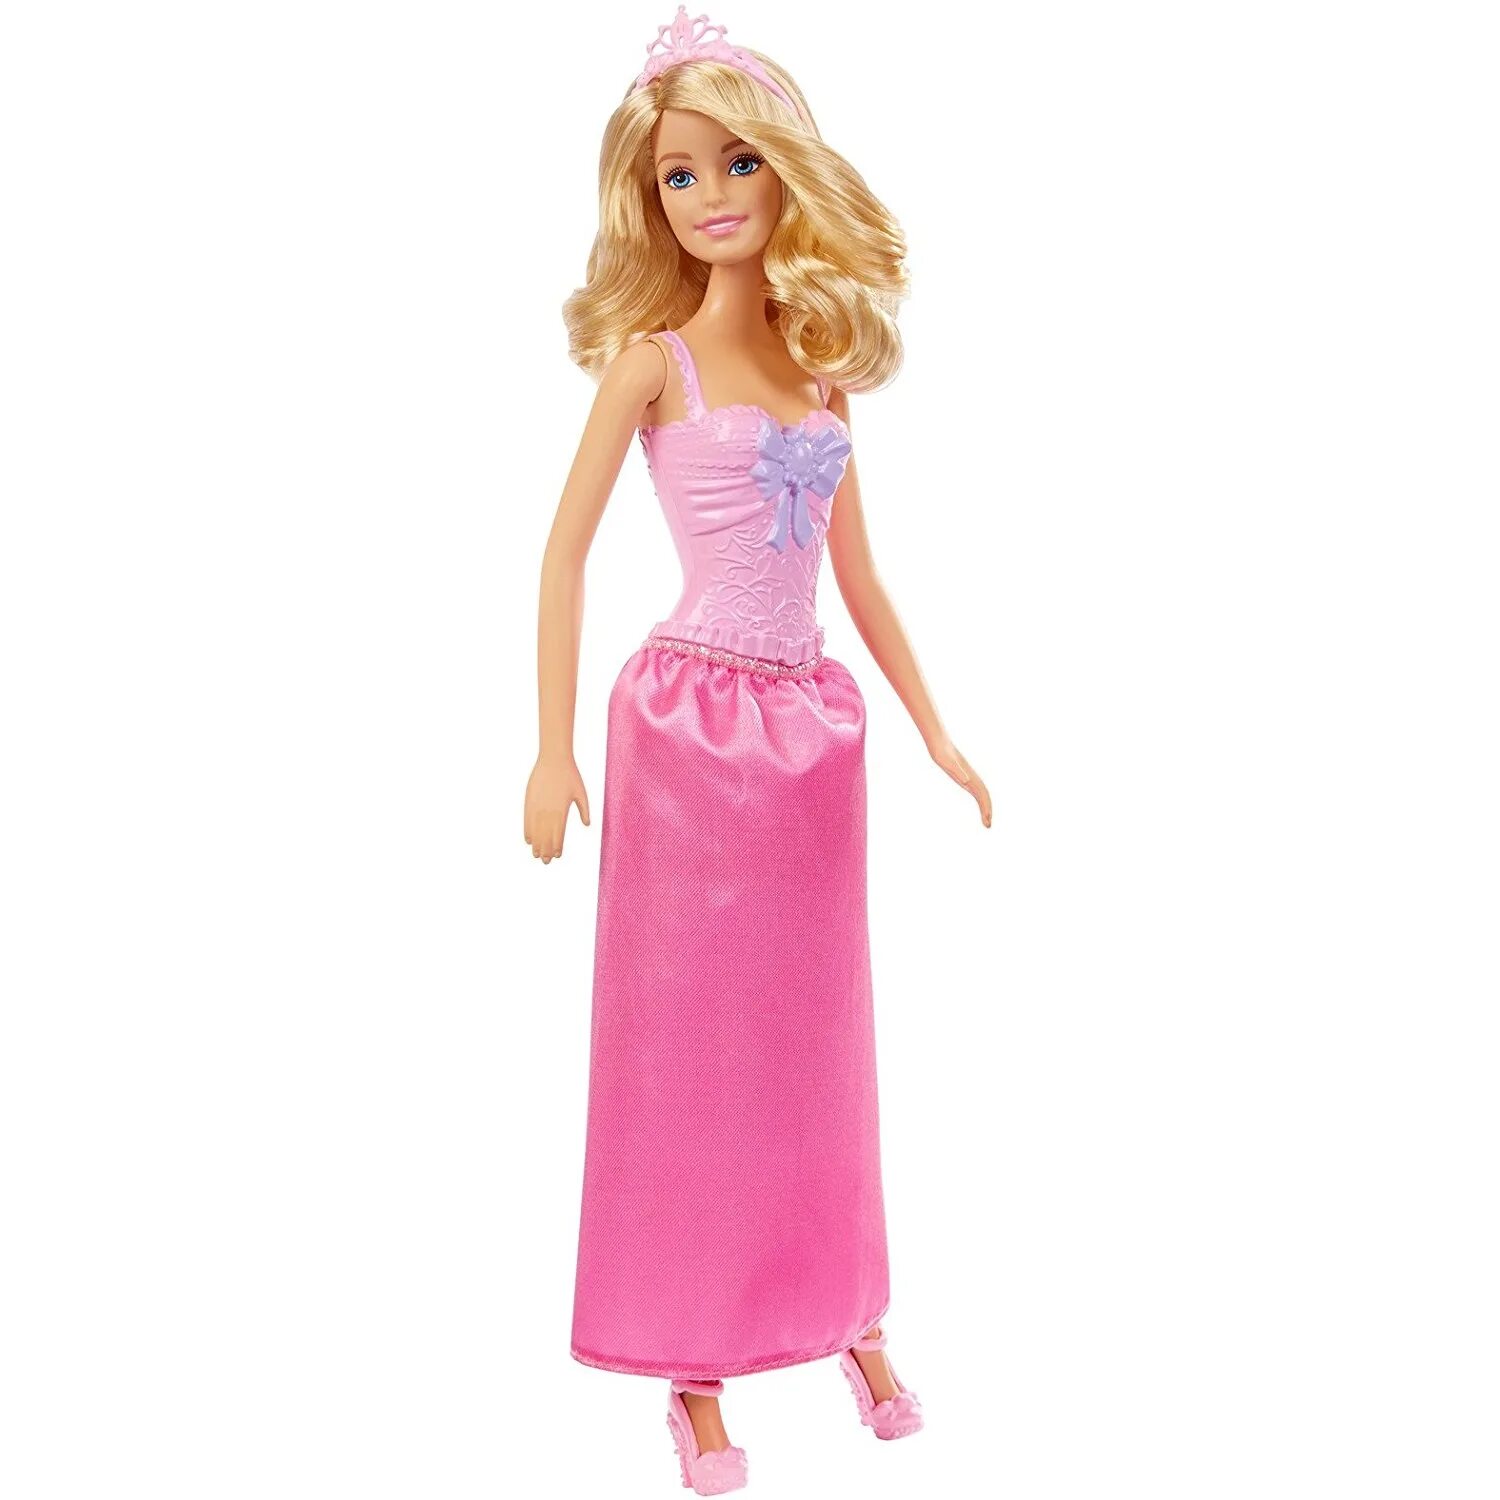 Кукла Маттель Барби. Игрушка Barbie принцессы dmm06. Кукла Mattel Barbie принцесса. Barbie в сиреневом платье dmm08. Игрушка барби купить